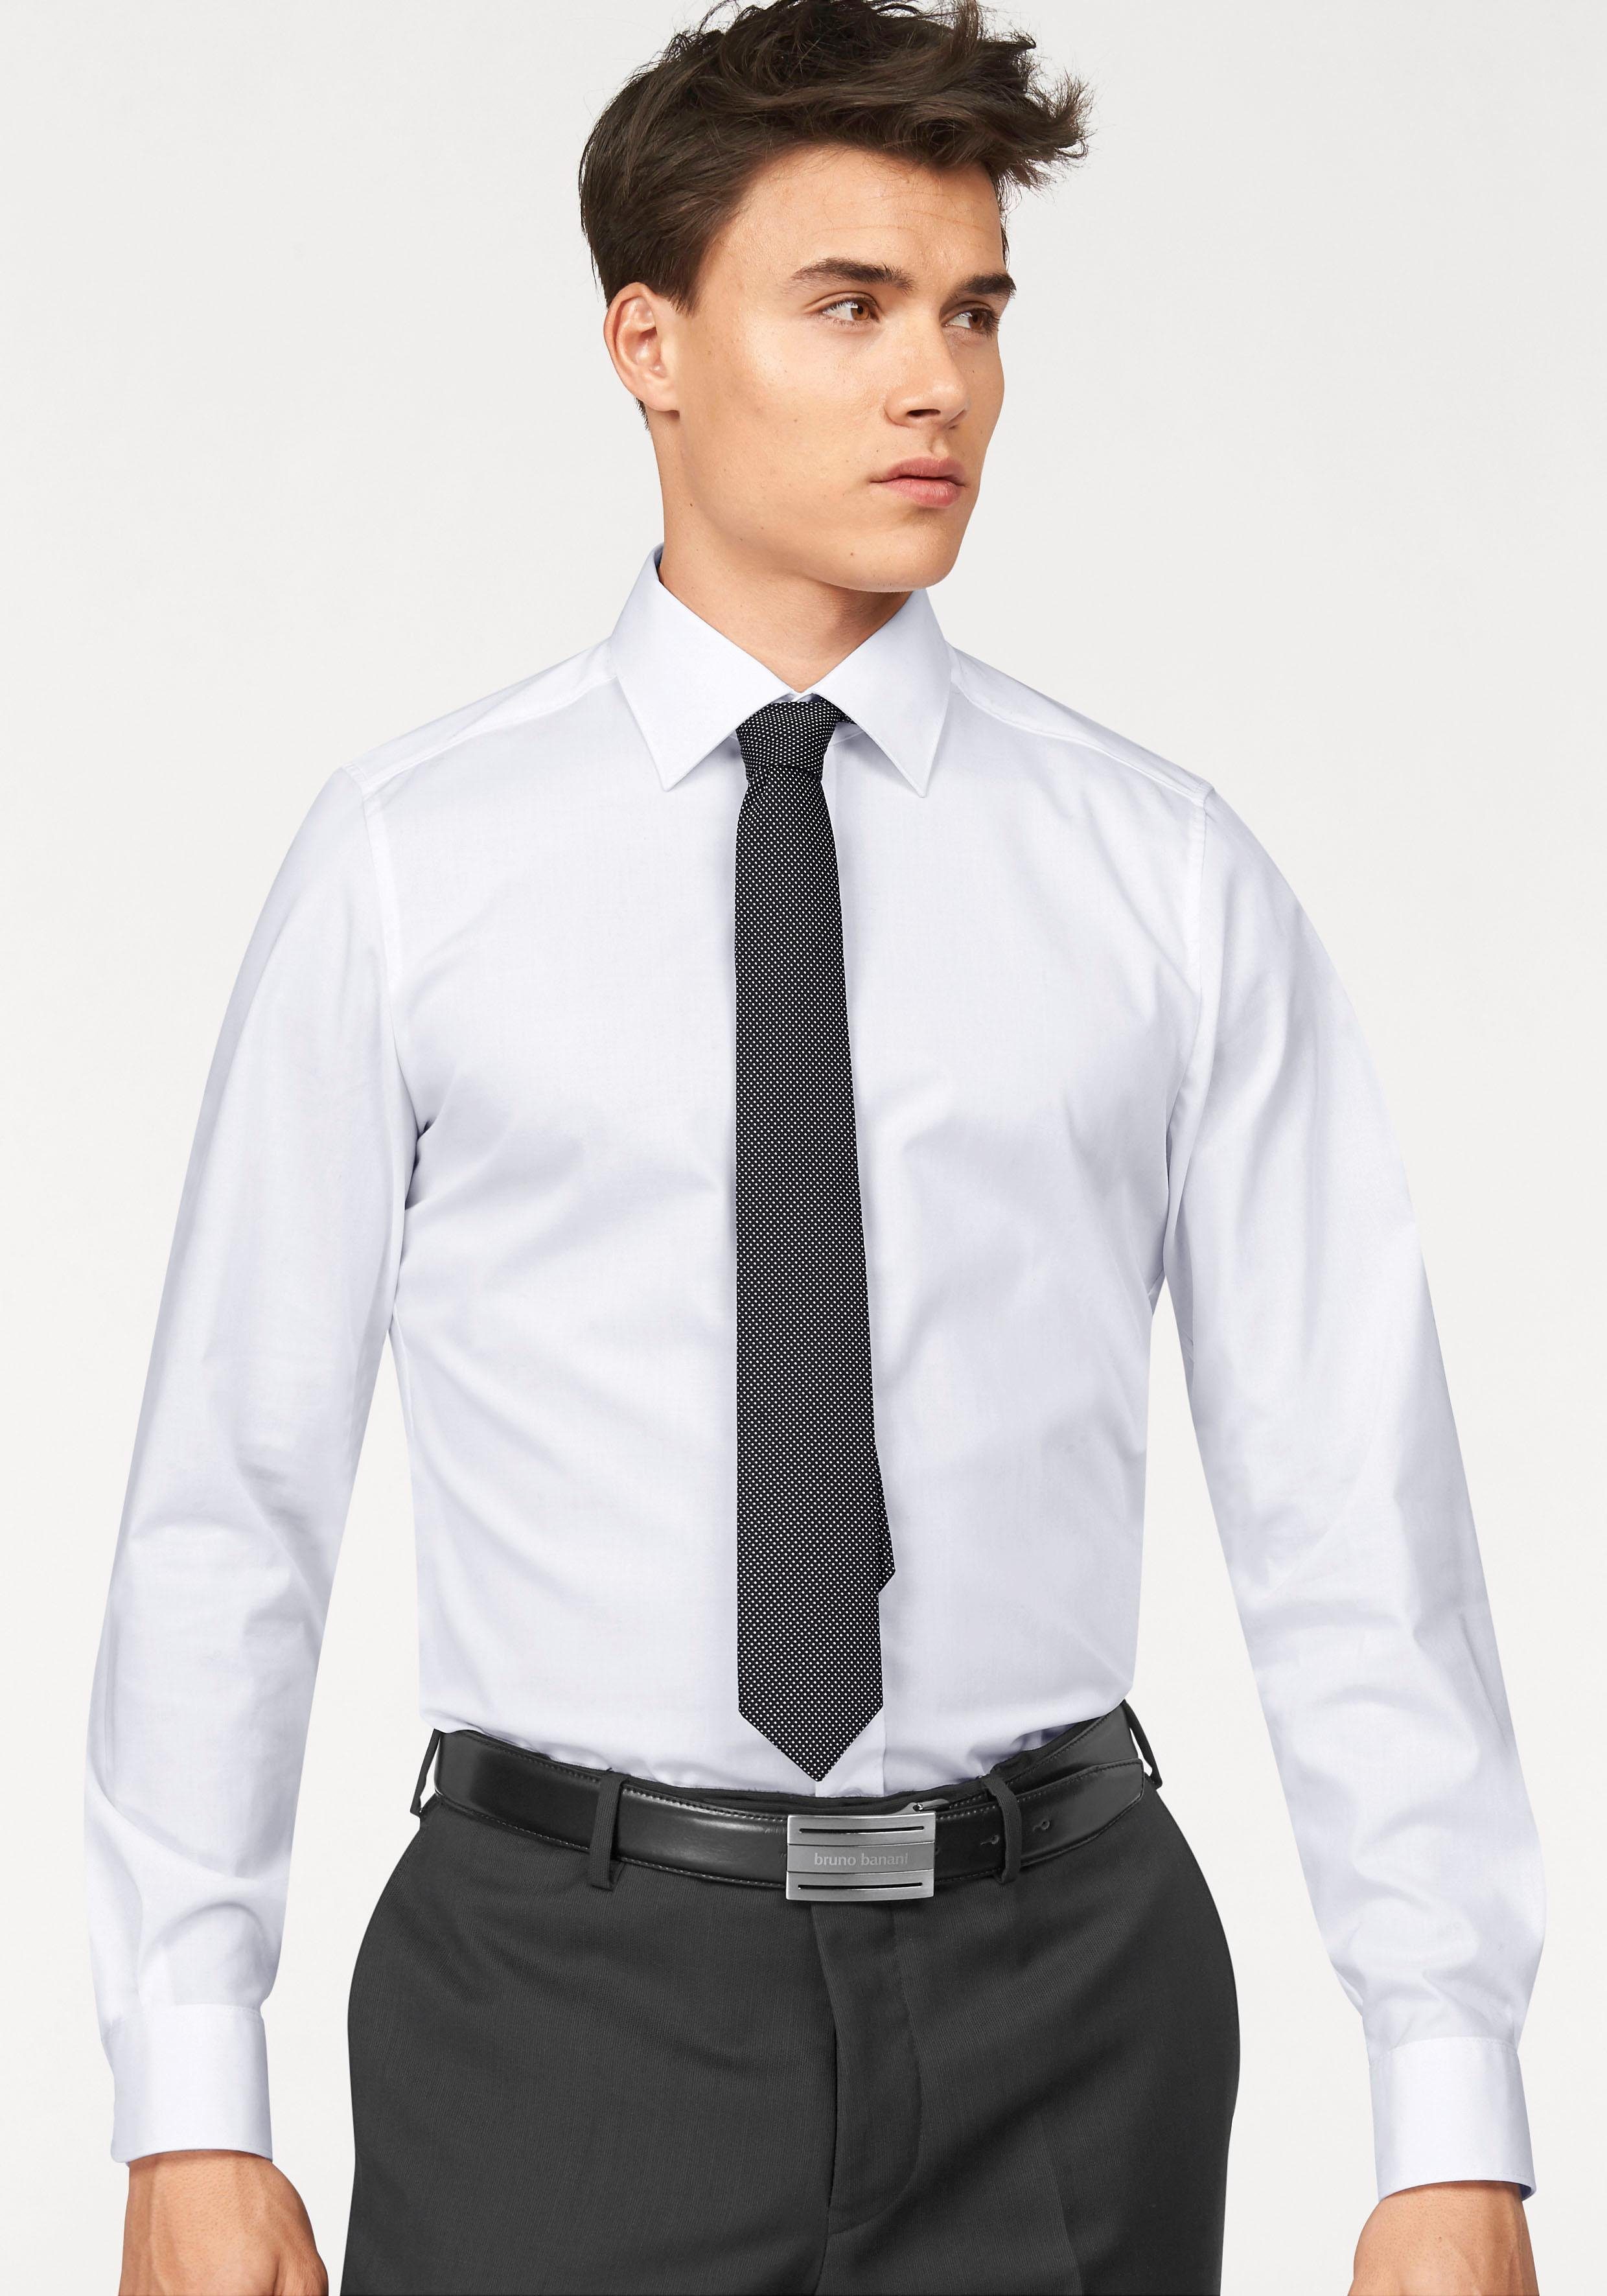 Hemden für Herren kaufen » Hemden von Top Marken | OTTO